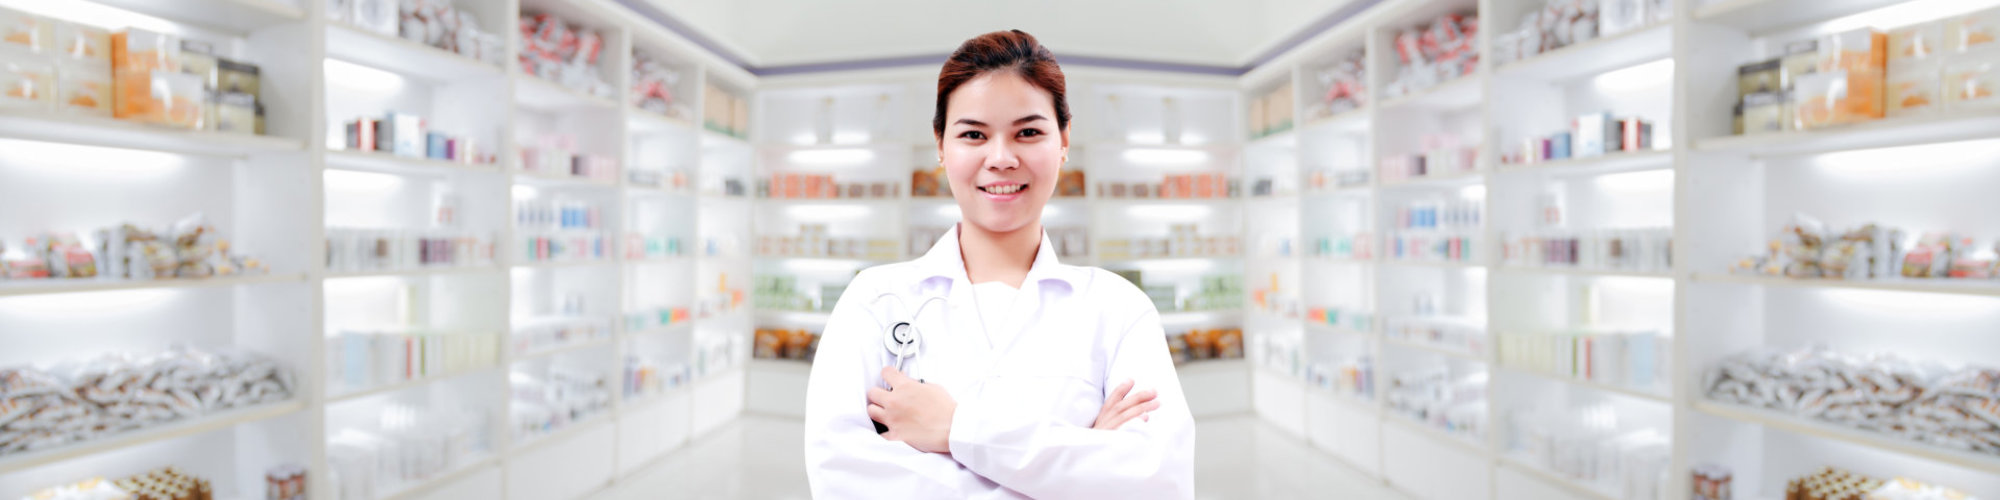 Pharmacist smiling